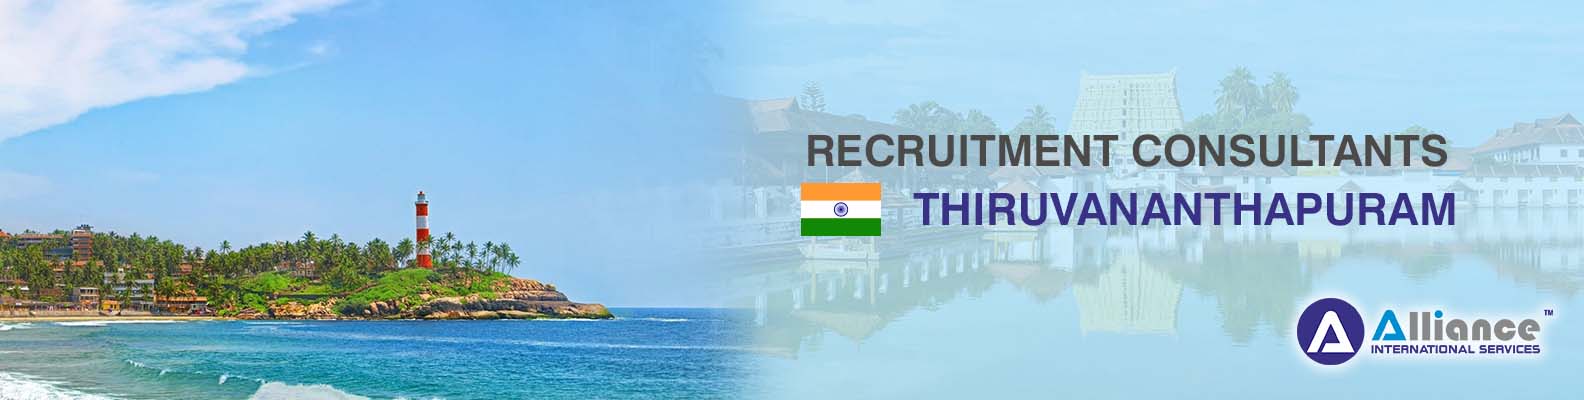 Recruitment Consultants Thiruvananthapuram